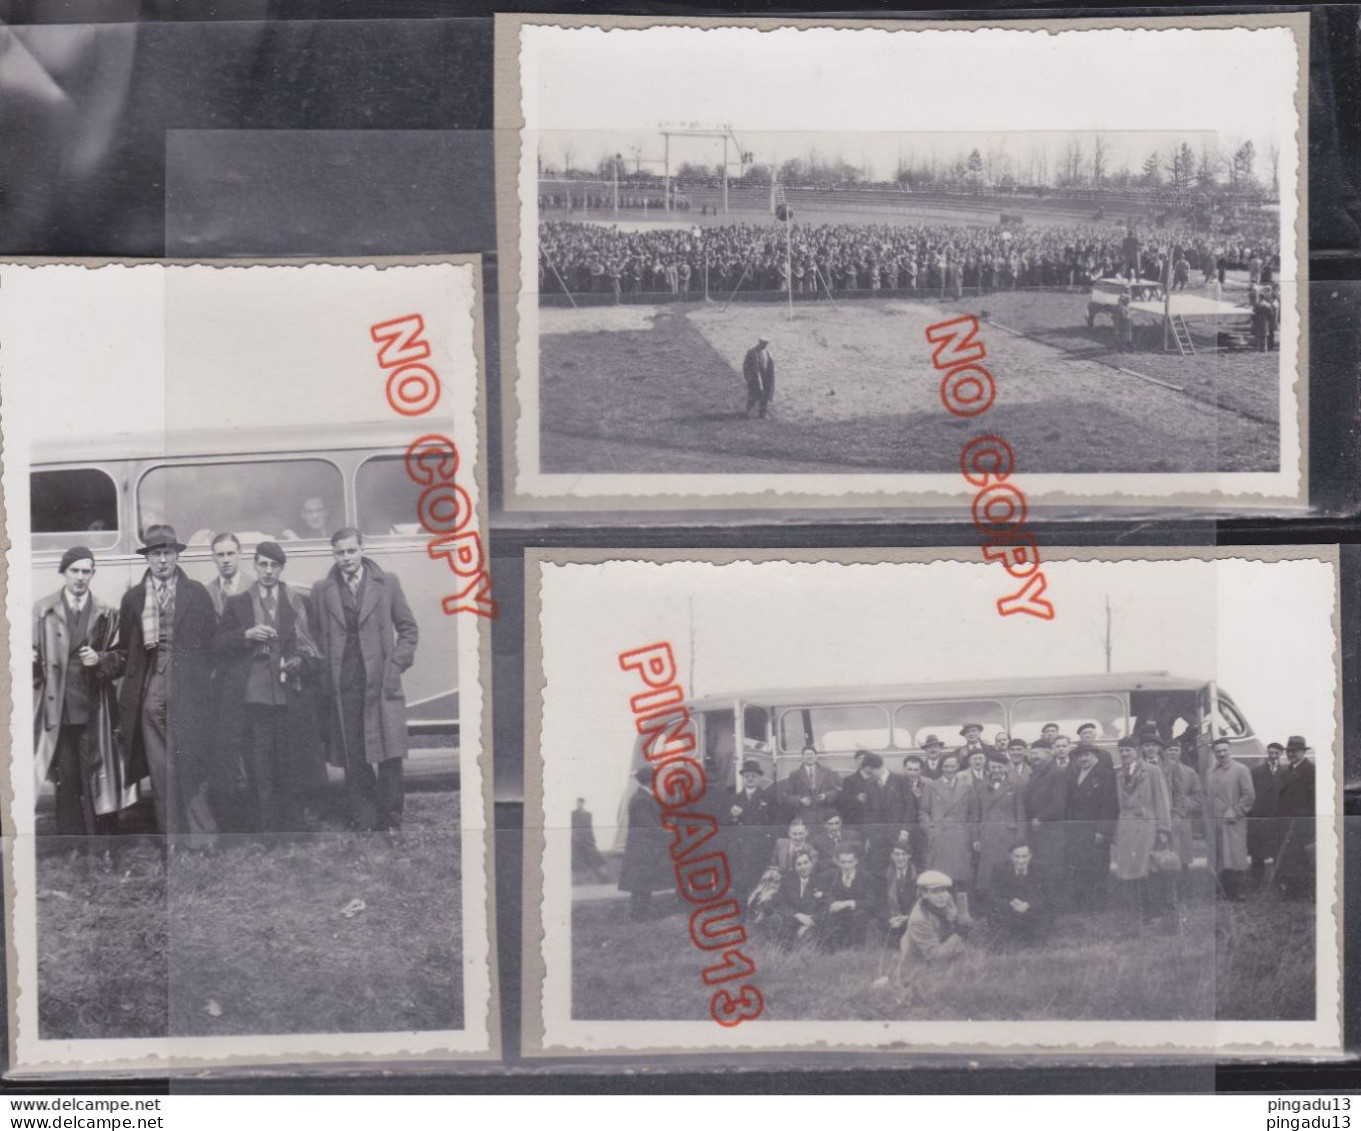 Fixe Photos Rassemblement Volontaires Croix De Feu Colonel De La Rocque Stade Autobus Voiture Années 30 * - Guerre, Militaire